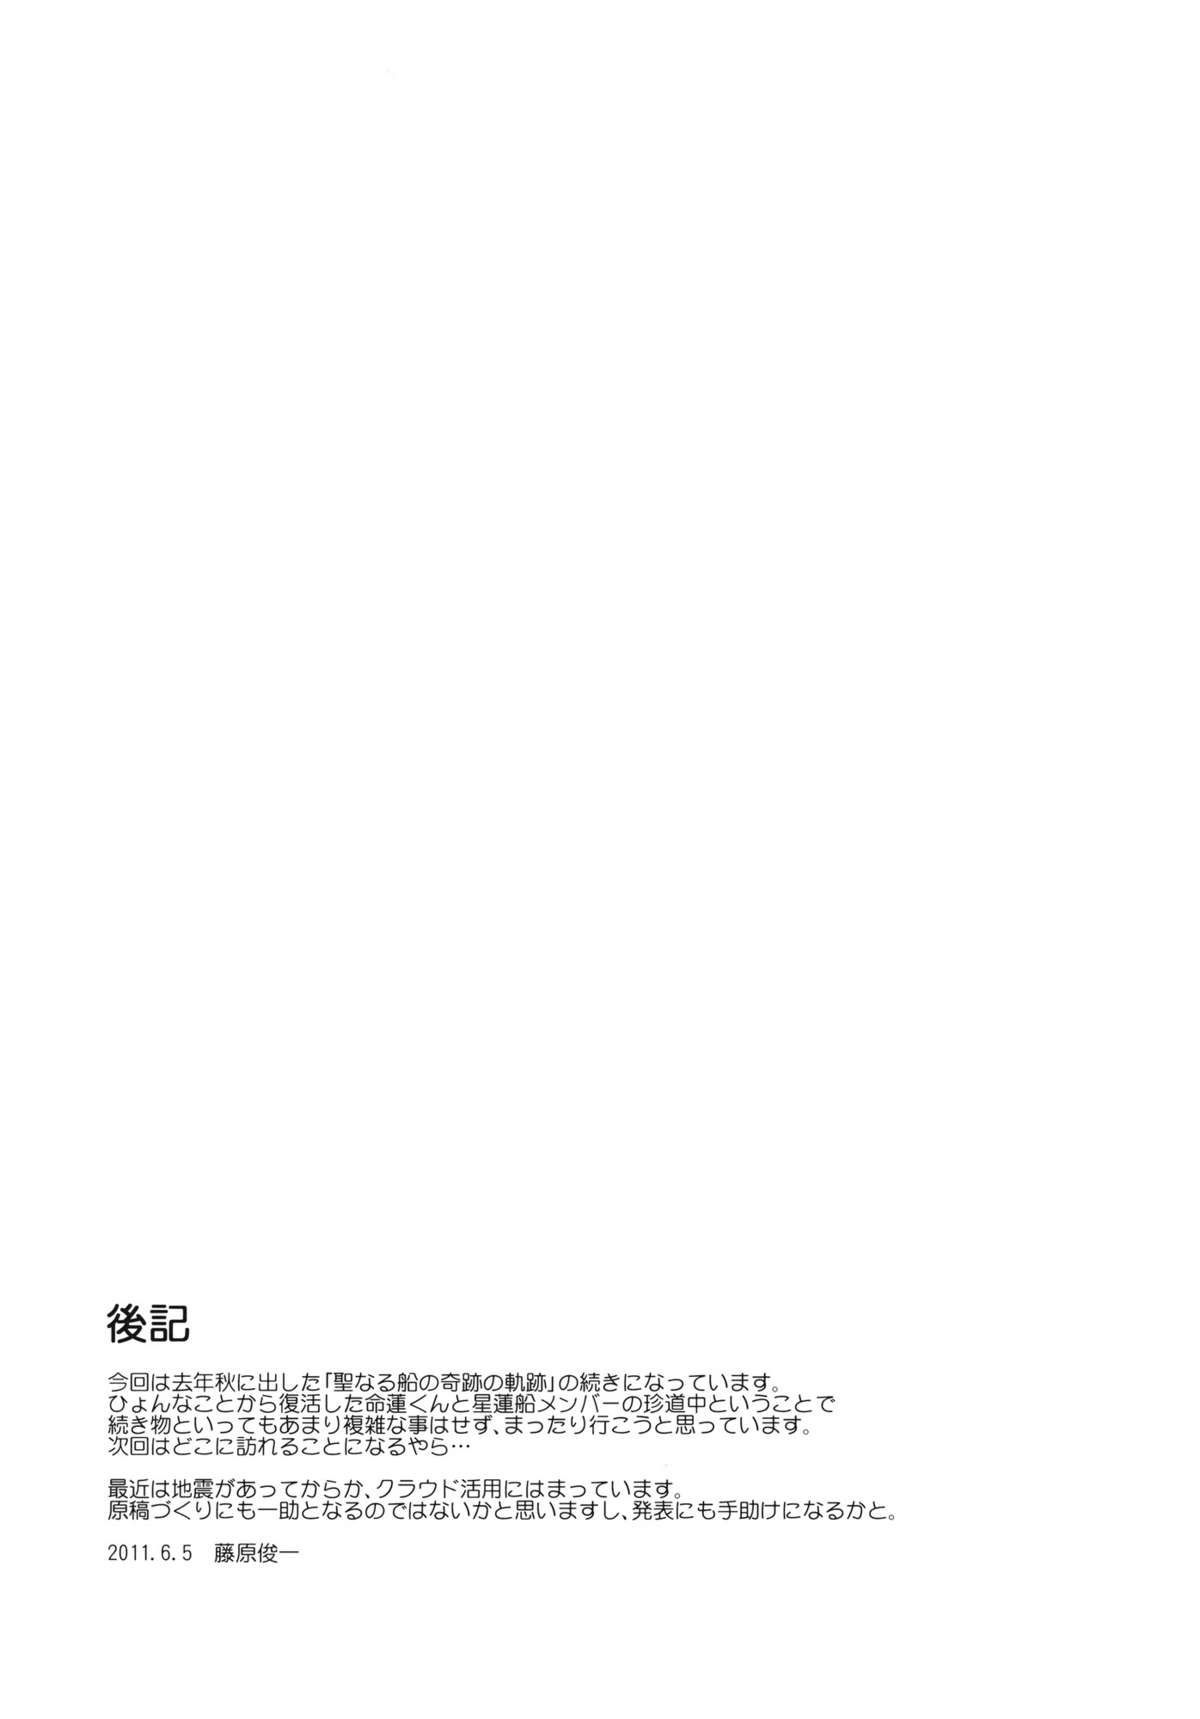 (コミコミ15) [PARANOIA CAT (藤原俊一)] 東方浮世絵巻 聖なる船の奇跡の軌跡 2 (東方Project)